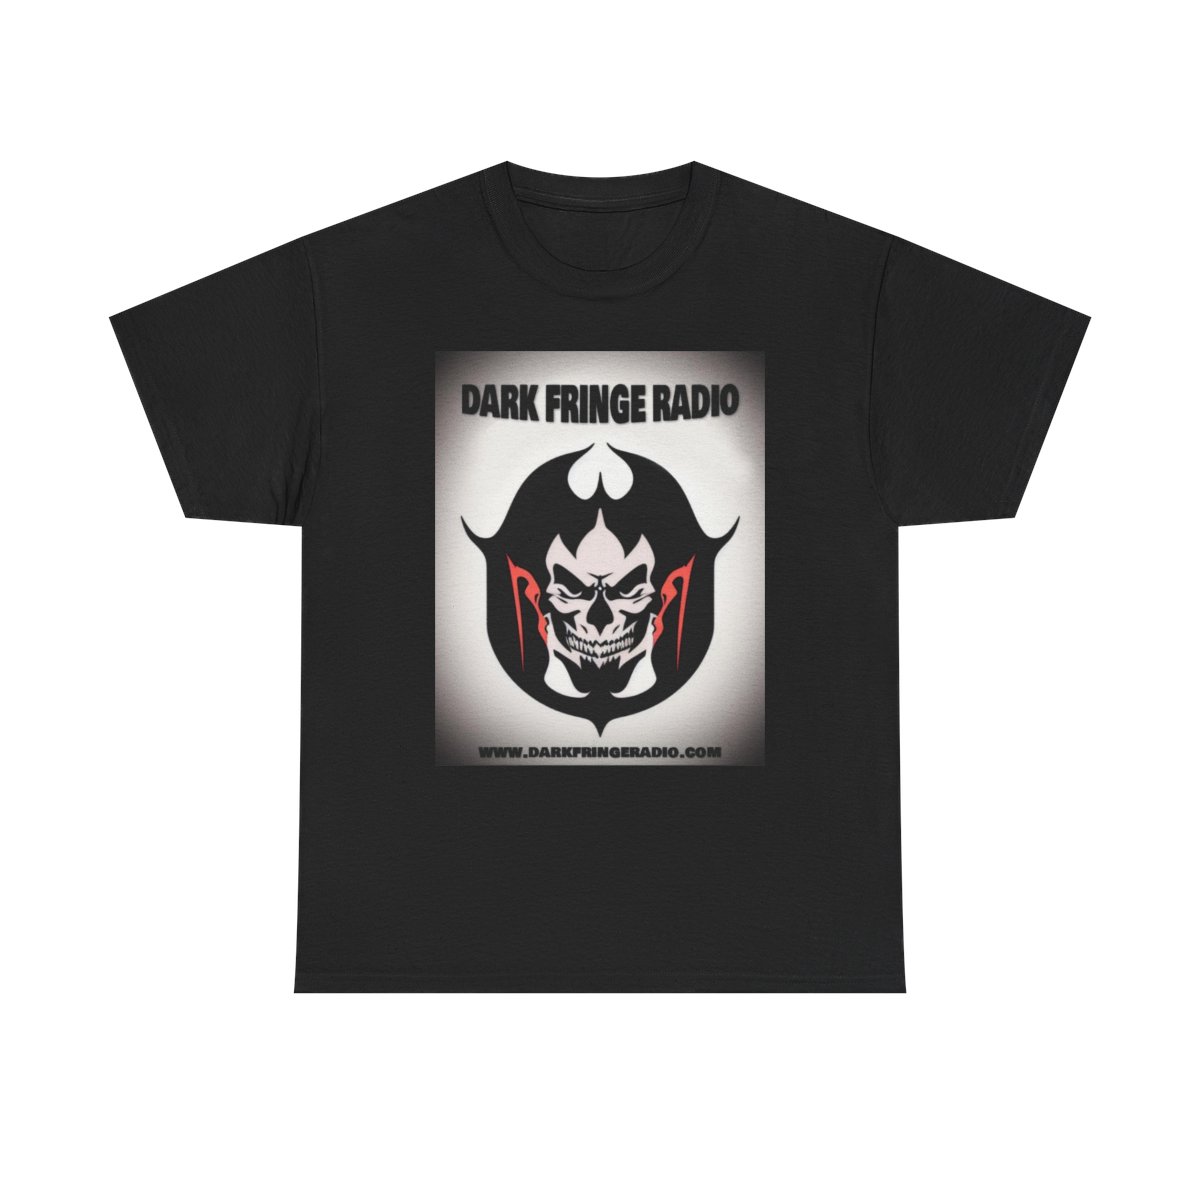 Dark Fringe Radio "Mephistopheles" T-Shirt product thumbnail image